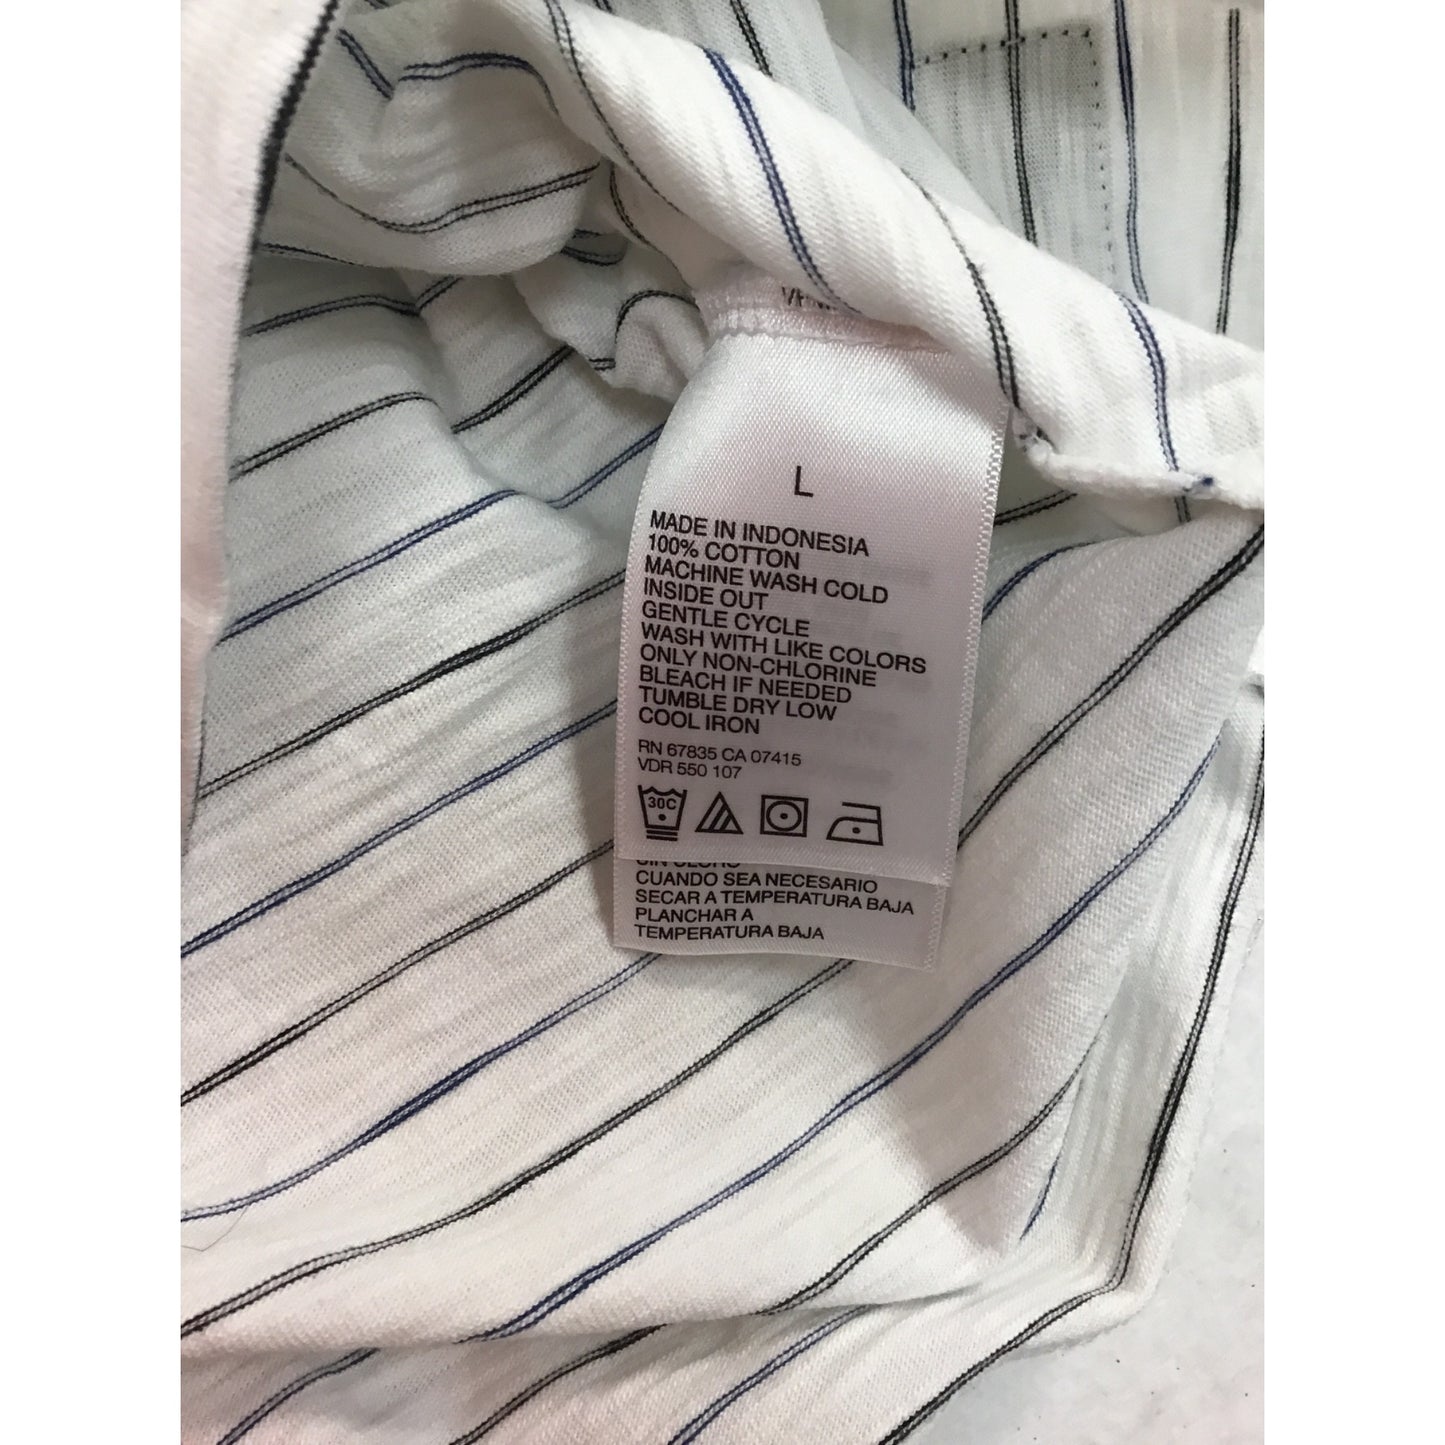 Men’s brand new shirt